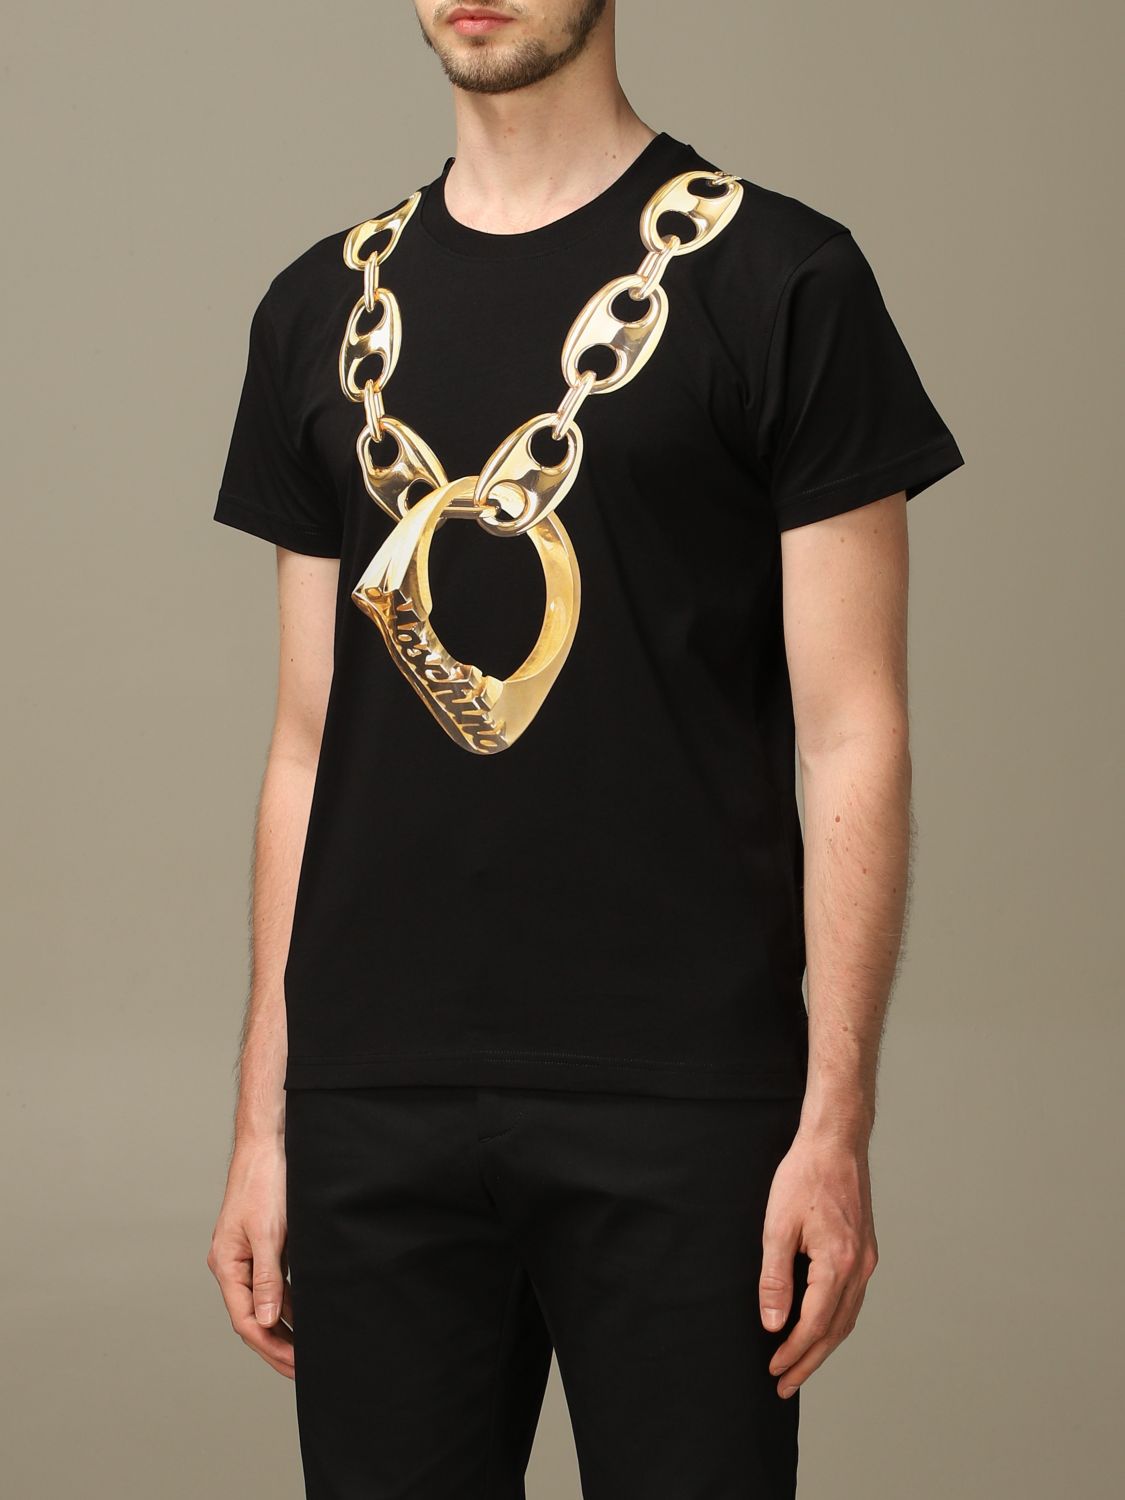 moschino chain t shirt